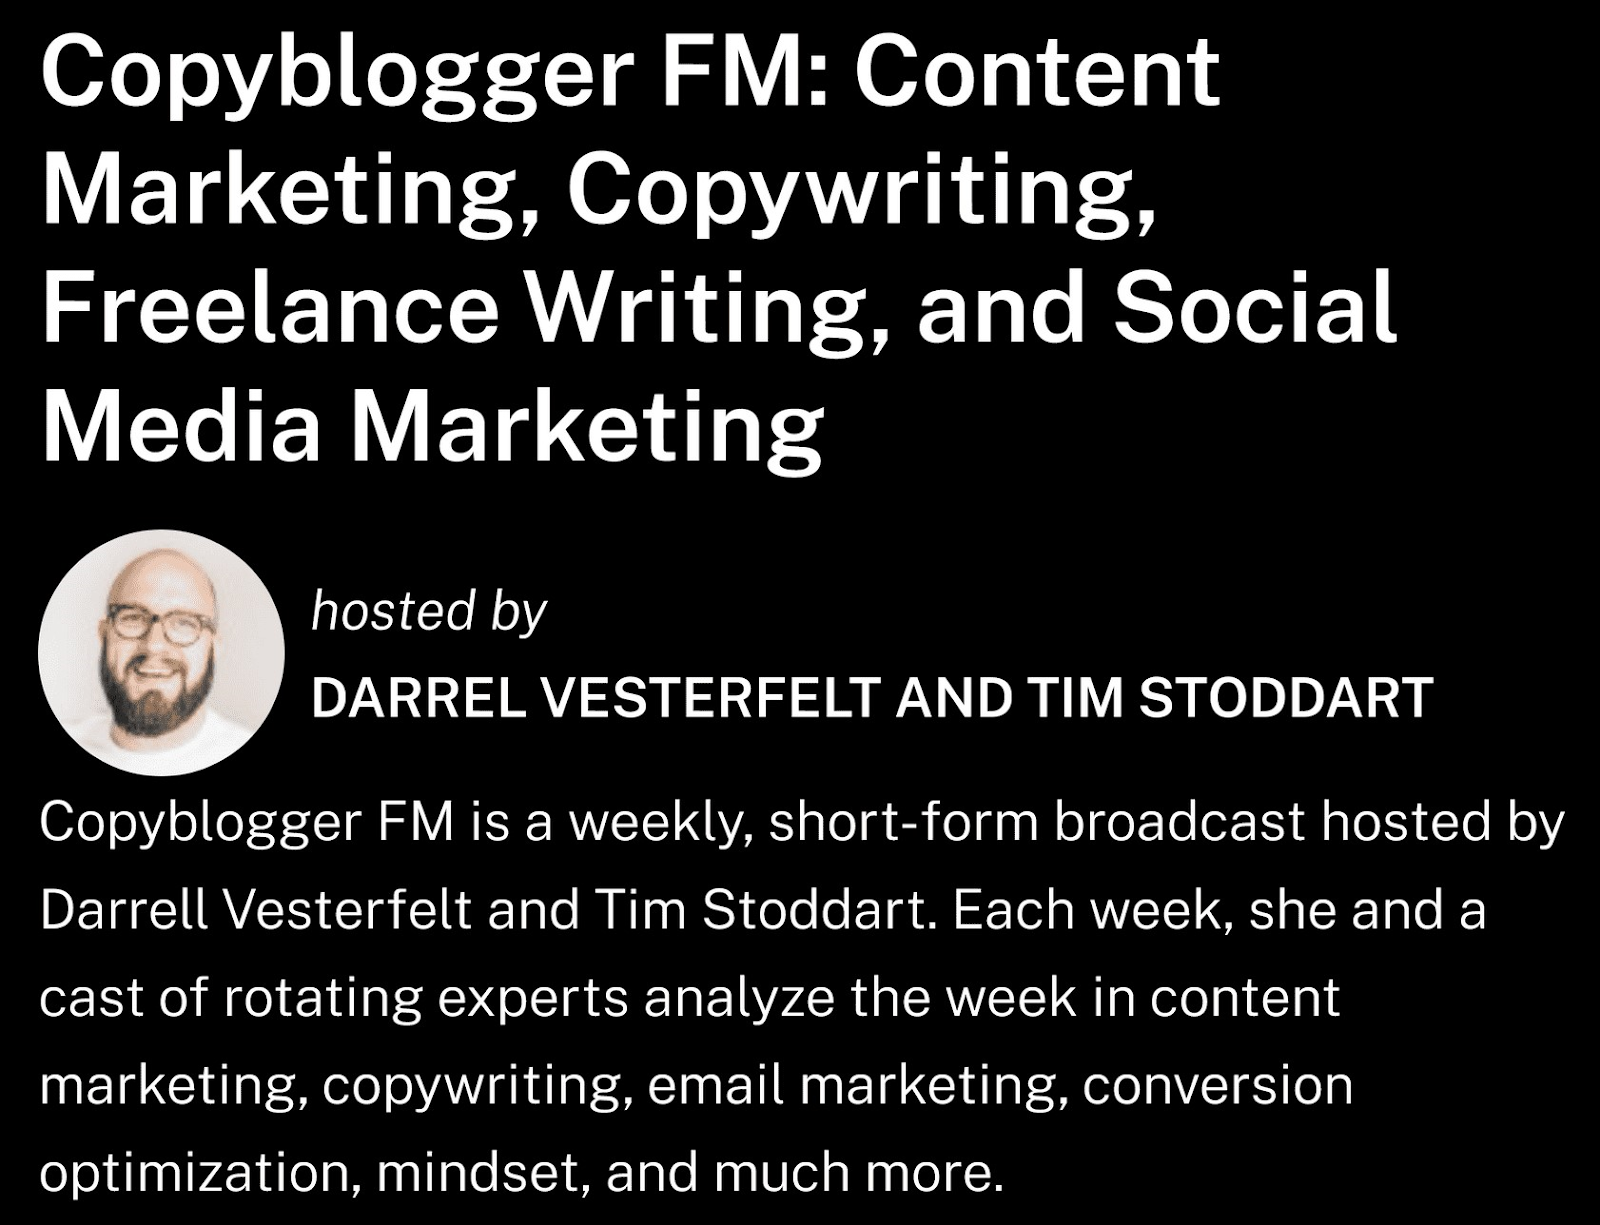 Copyblogger FM's broadcast description